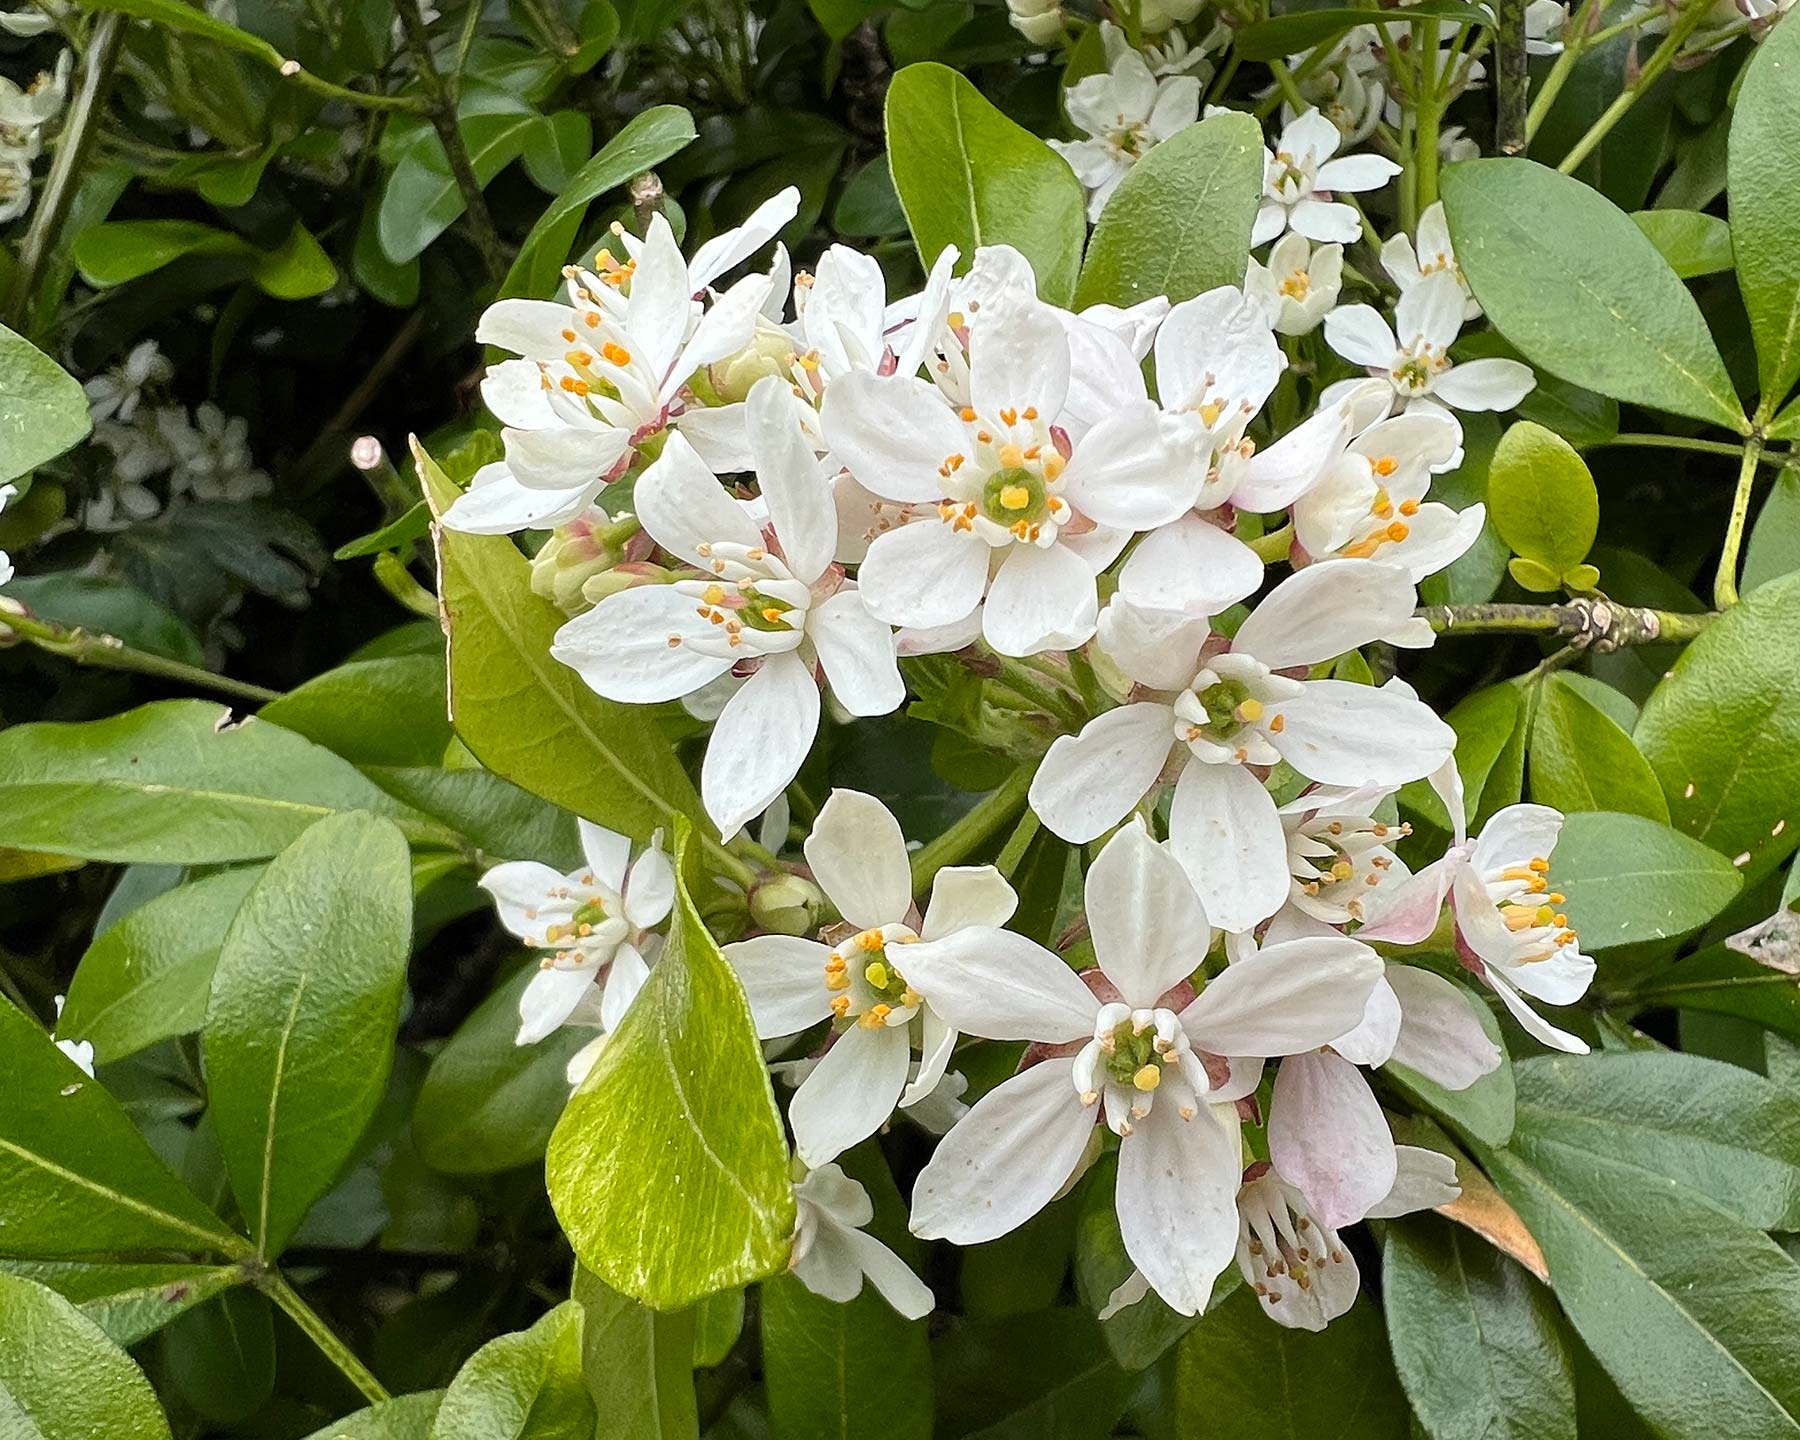 Clusters of white perfumed flowers in spring - Choisya ternata